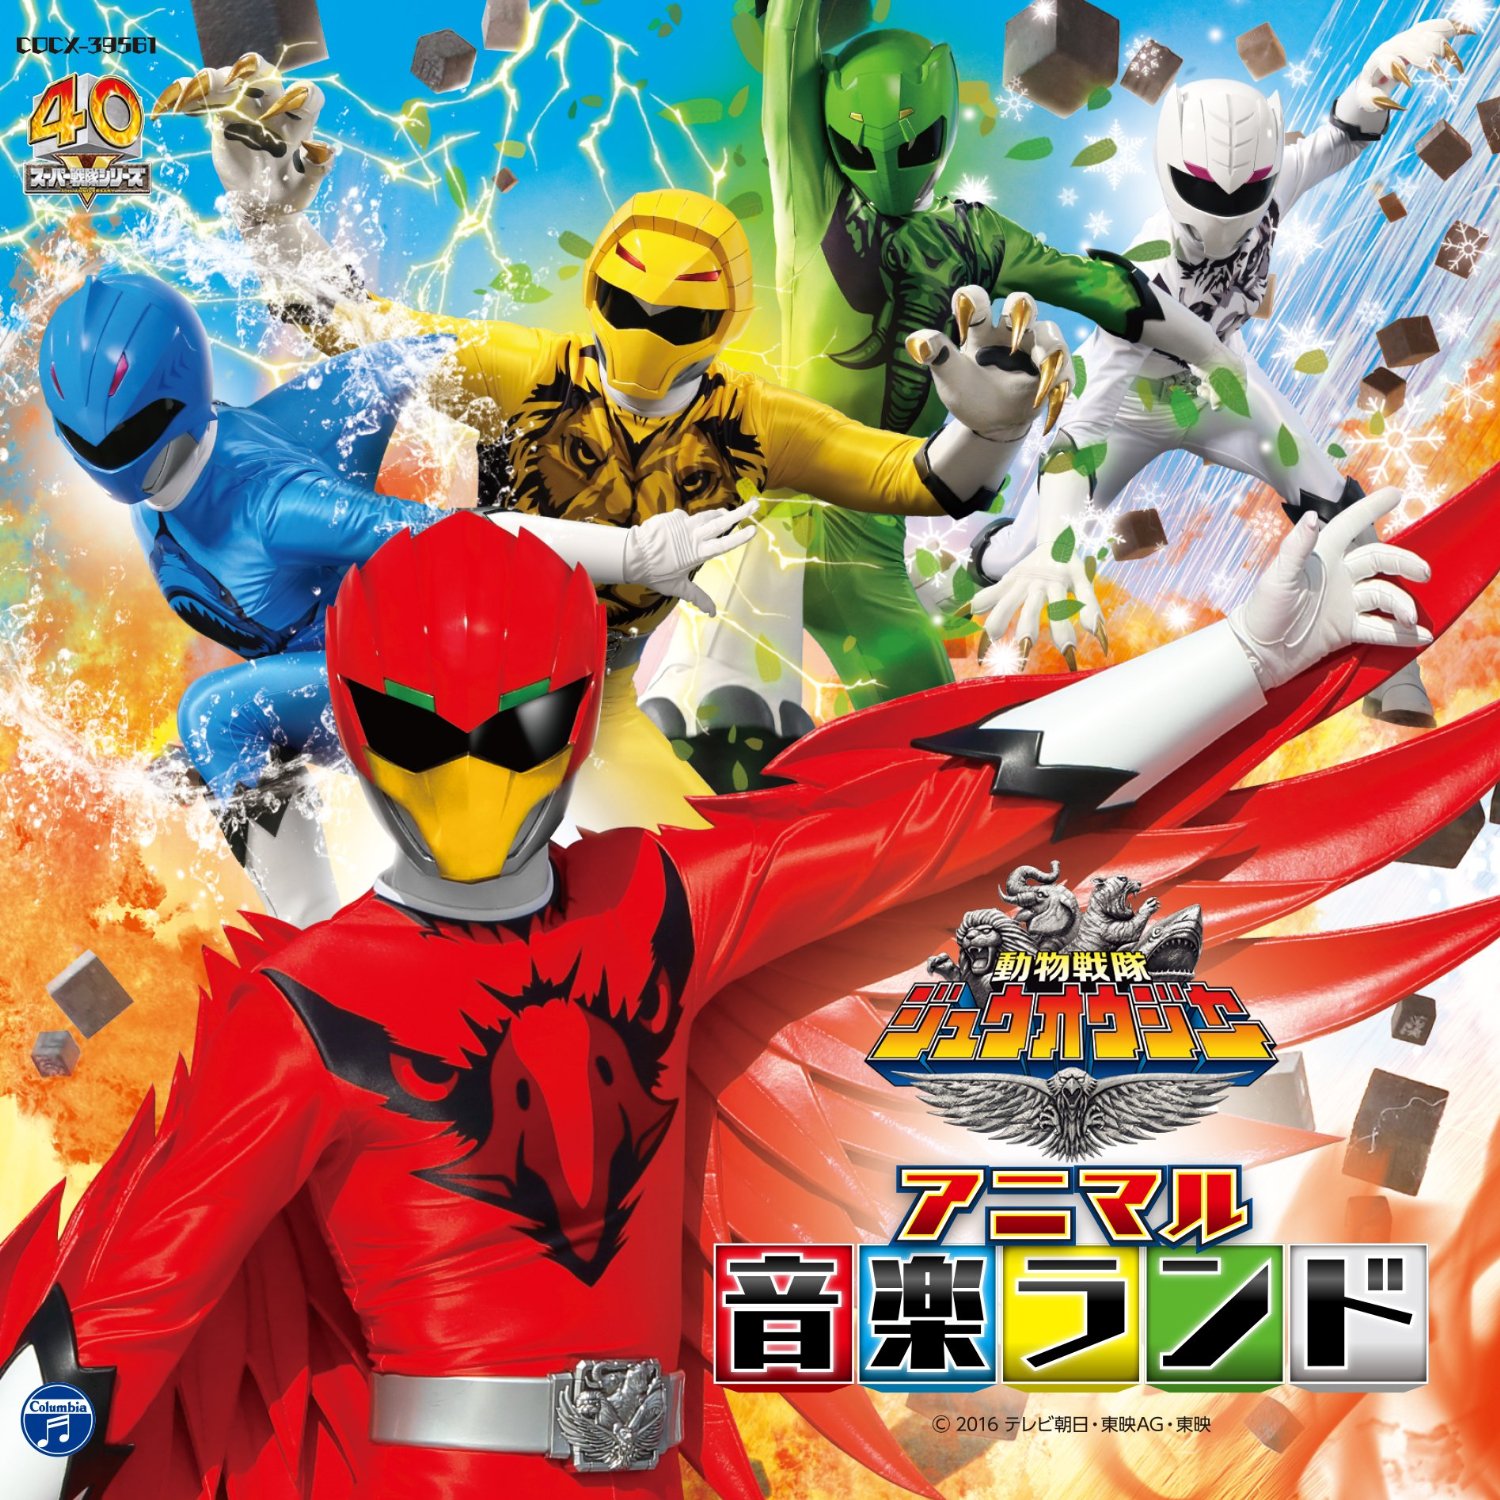 Dōbutsu Sentai Zyuohger Soundtracks | RangerWiki | FANDOM powered by Wikia
